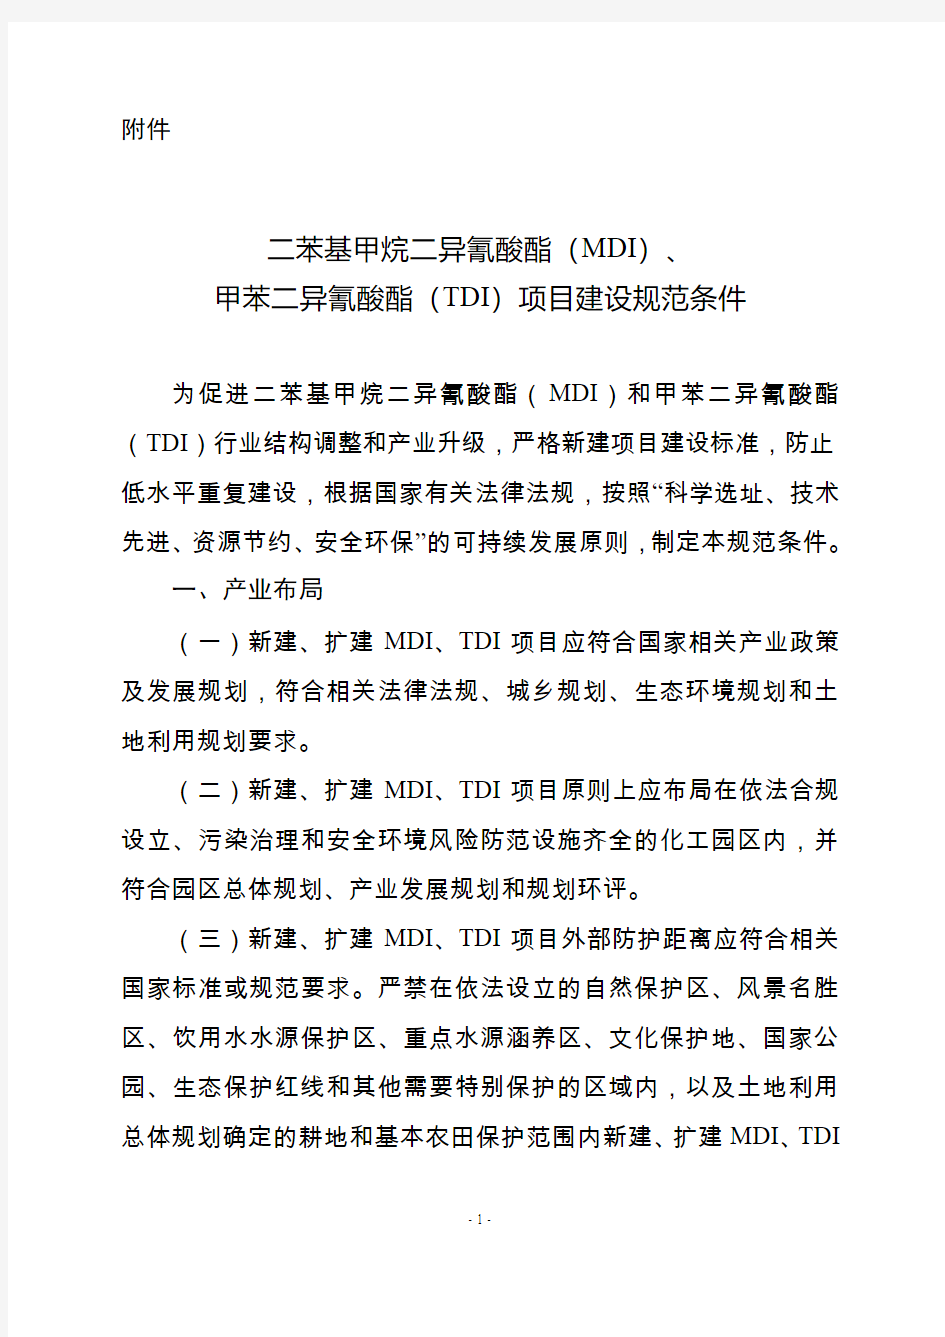 二苯基甲烷二异氰酸酯MDI-中华人民共和国工业和信息化部